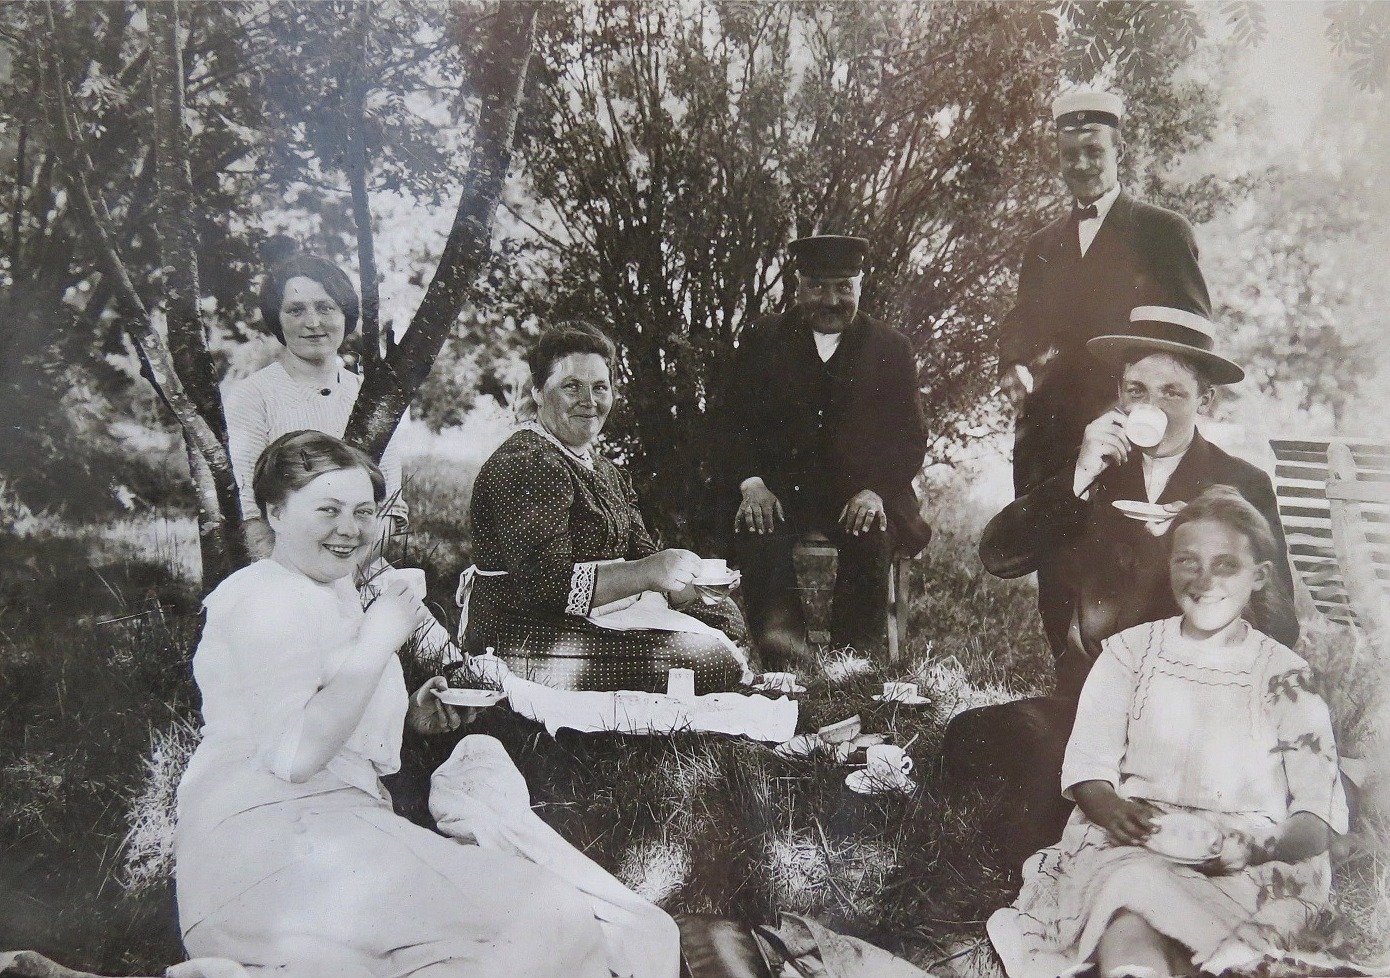 I mitten sitter Ida och J. J. Wadström tillsammans med sin familj.